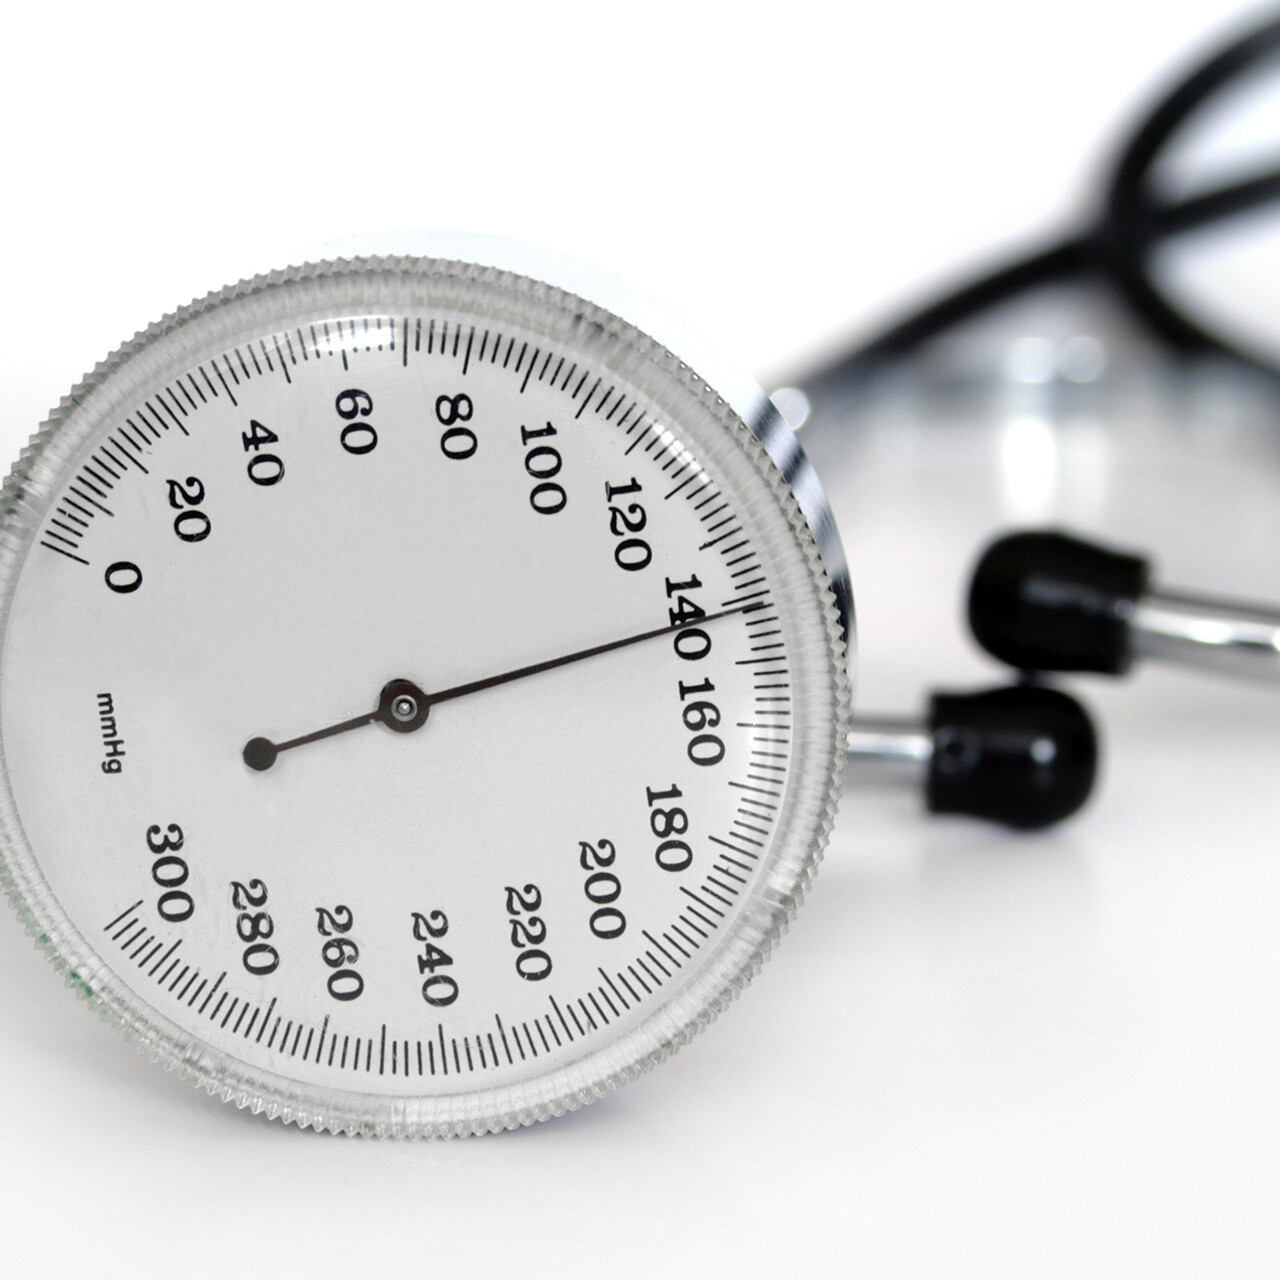 Augsts vai zems asinsspiediens ir tā sauktā objektīva patoloģija, t.i., ir instrumenti, ar kuriem var objektīvi un precīzi izmērīt tās apjomu.